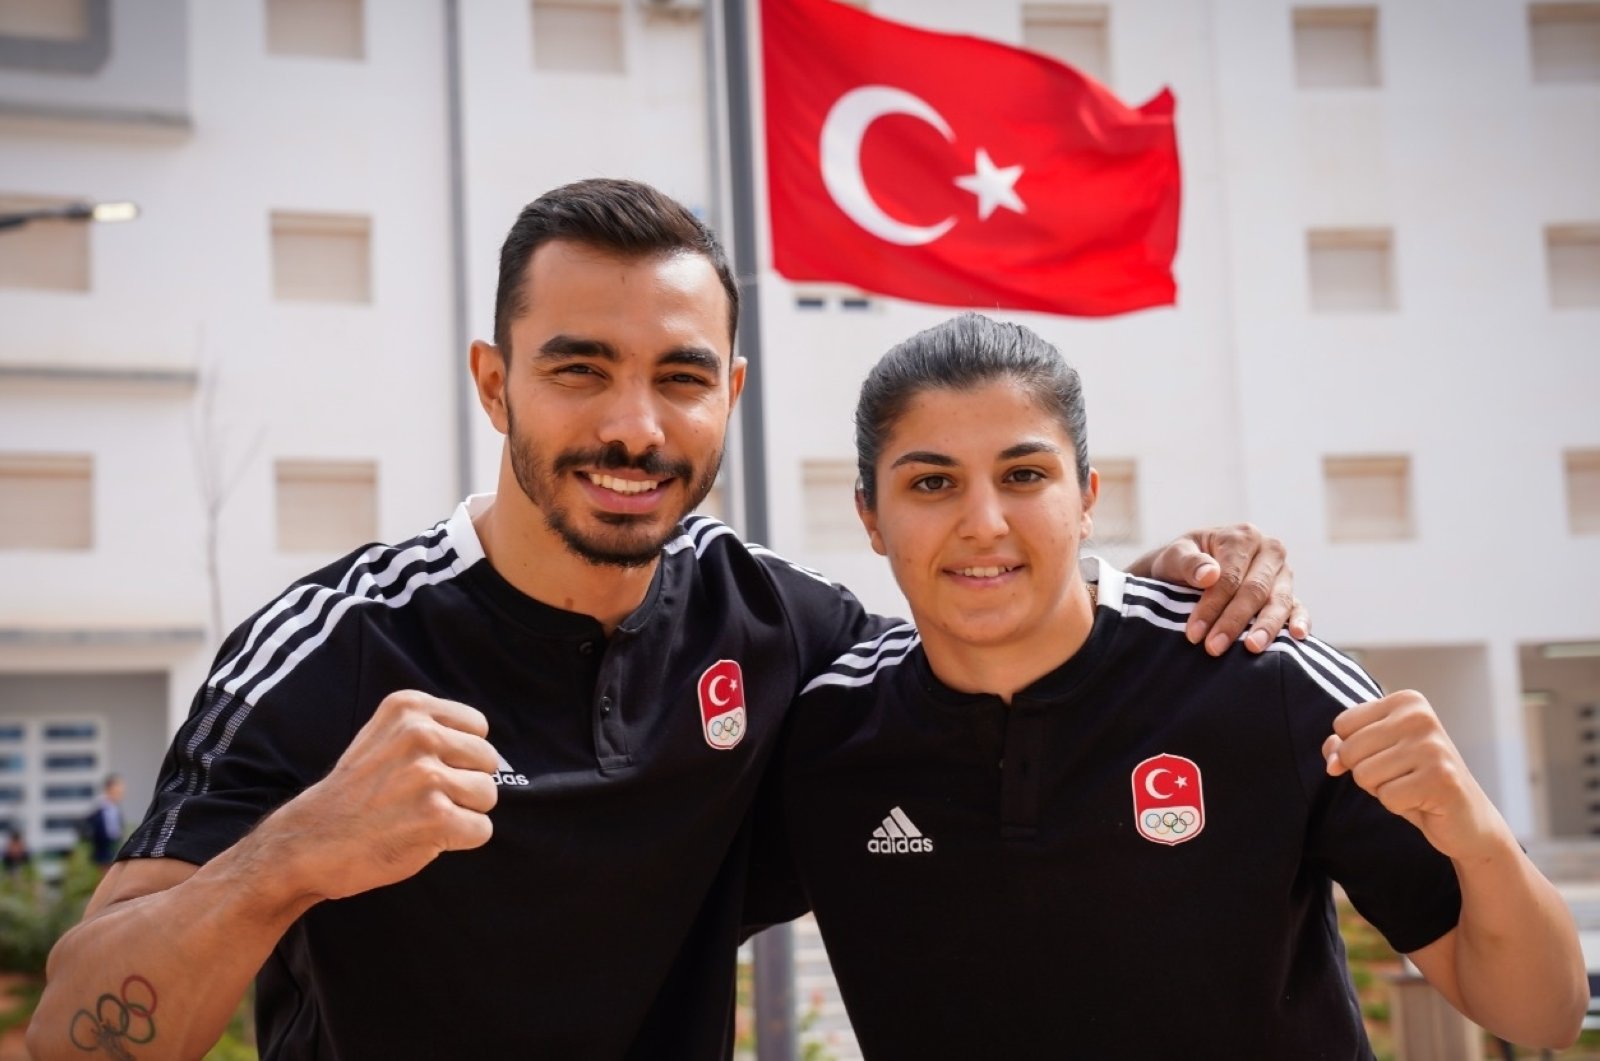 Türk milli takımı 19. Akdeniz Oyunları’na katılmak için Cezayir’e gidiyor.